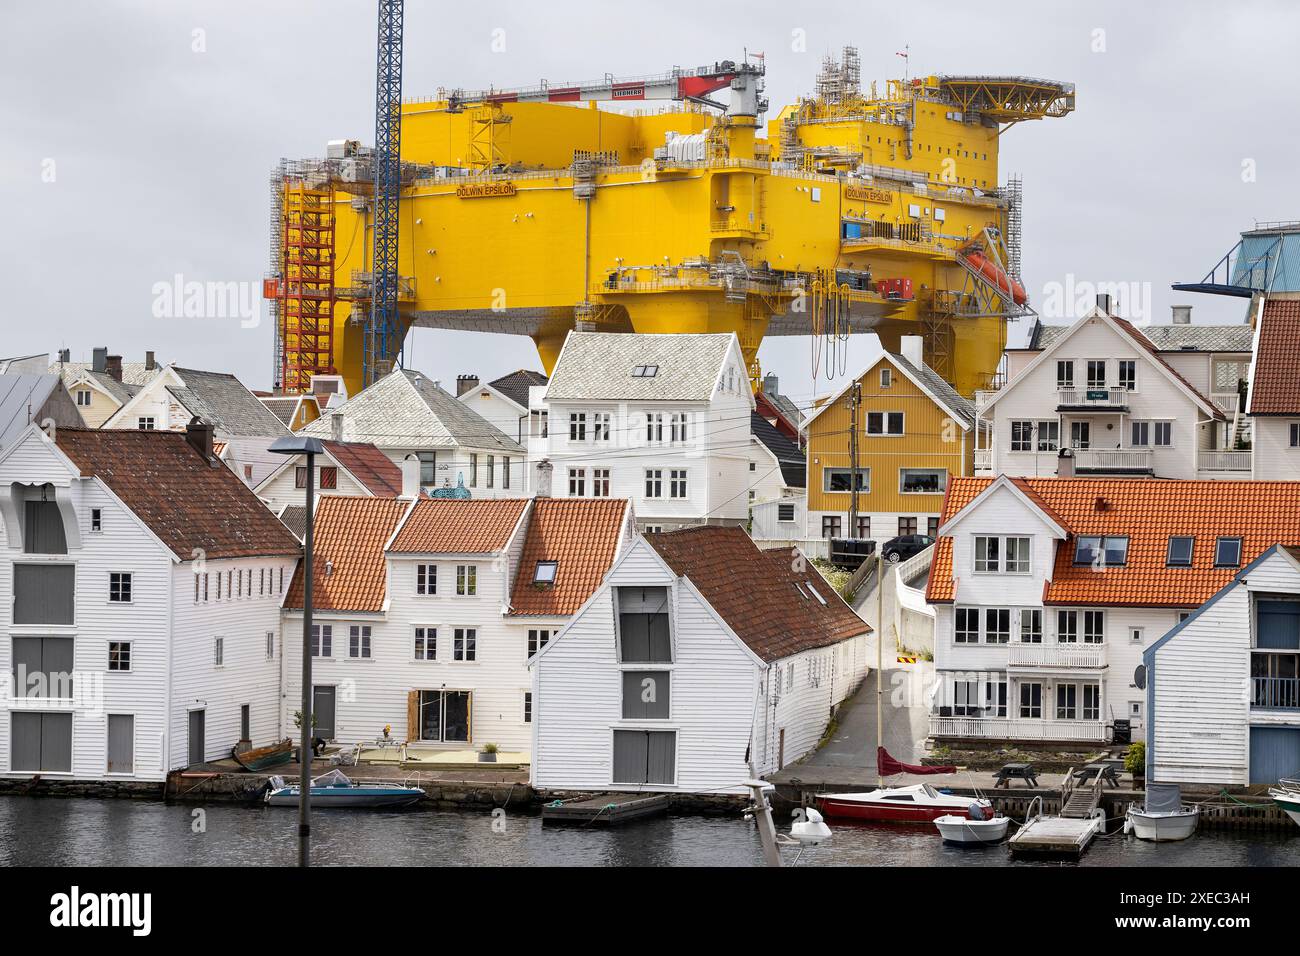 La piattaforma del convertitore offshore Dolwin Epsilon raffigurata a Haugesund, Norvegia, dove la struttura oscura le case. La piattaforma è lunga 82 metri, Foto Stock